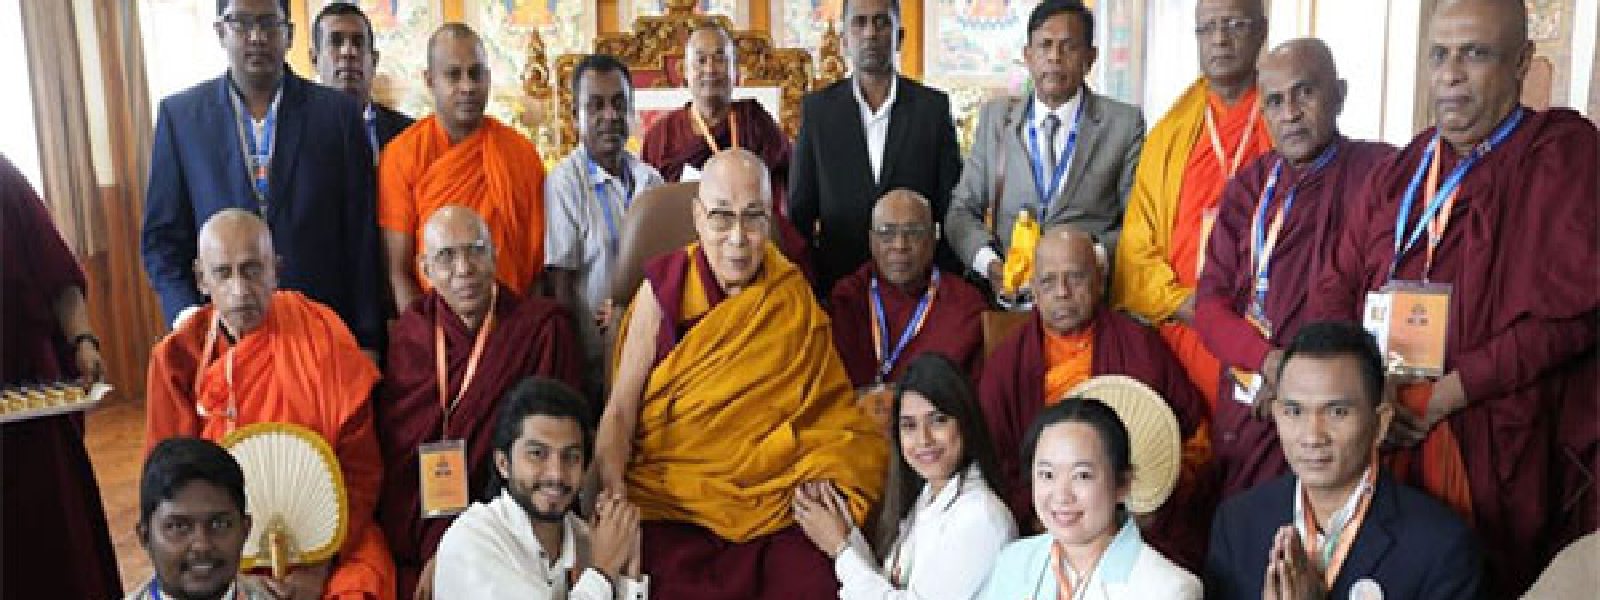 Sri Lankan monks seek Dalai Lama's visit